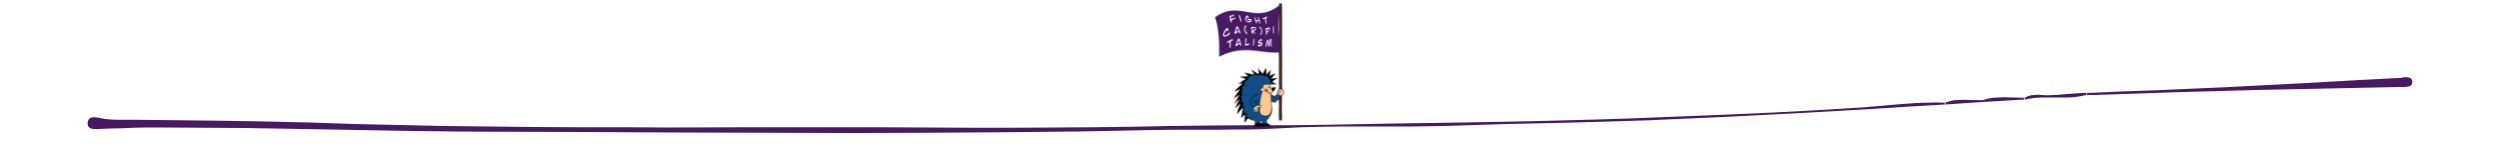 Linie, auf der ein kleiner Igel mit "Fight CarPitalism" Fahne steht.